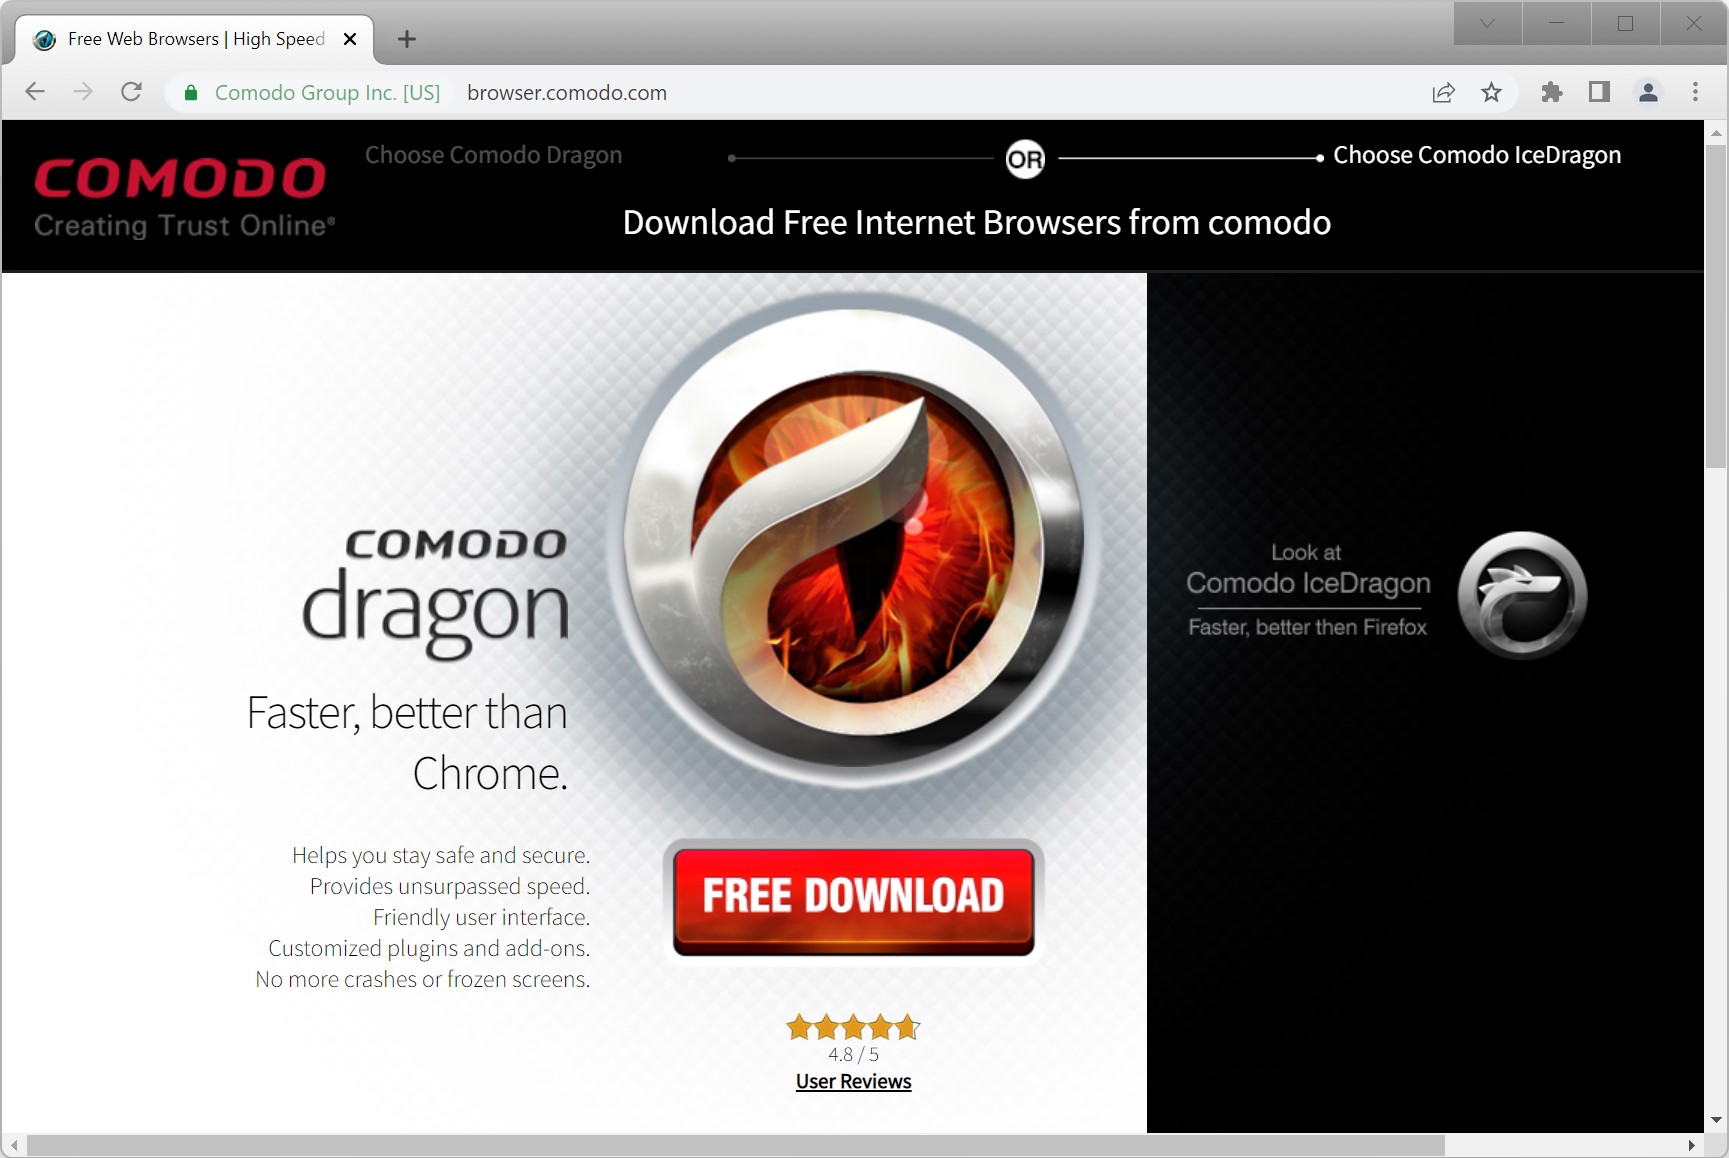 screenshot comodo browser browser.comodo.com